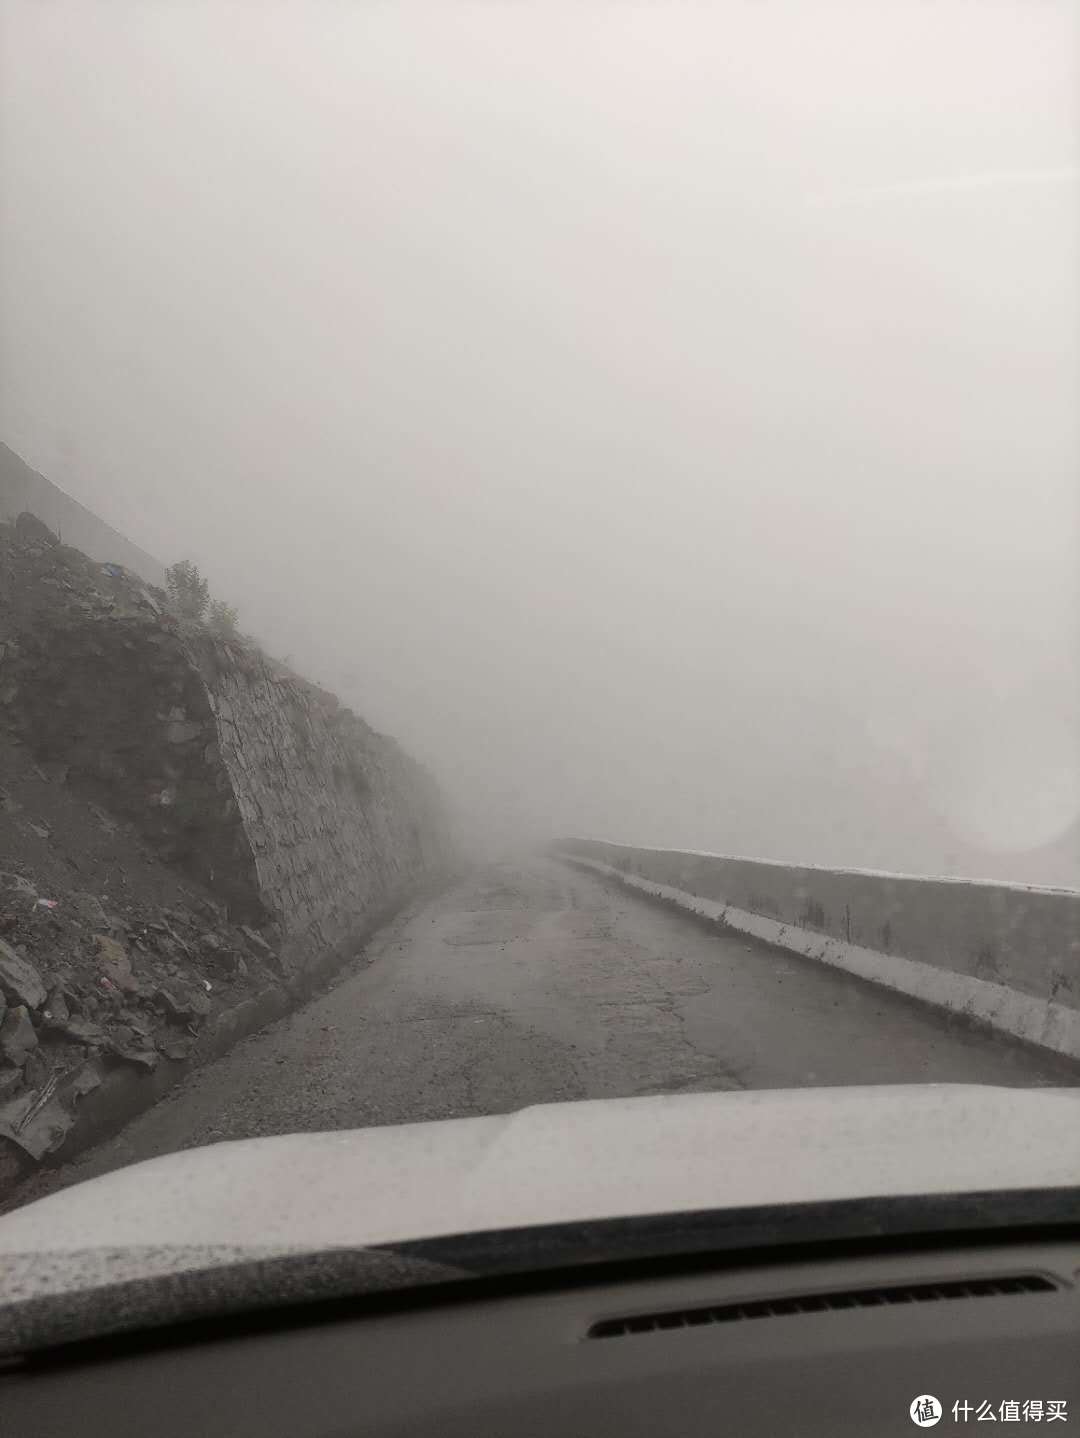 出了隧道，山里山外就两种景色了，大雾弥漫，而且气温也下降了不少